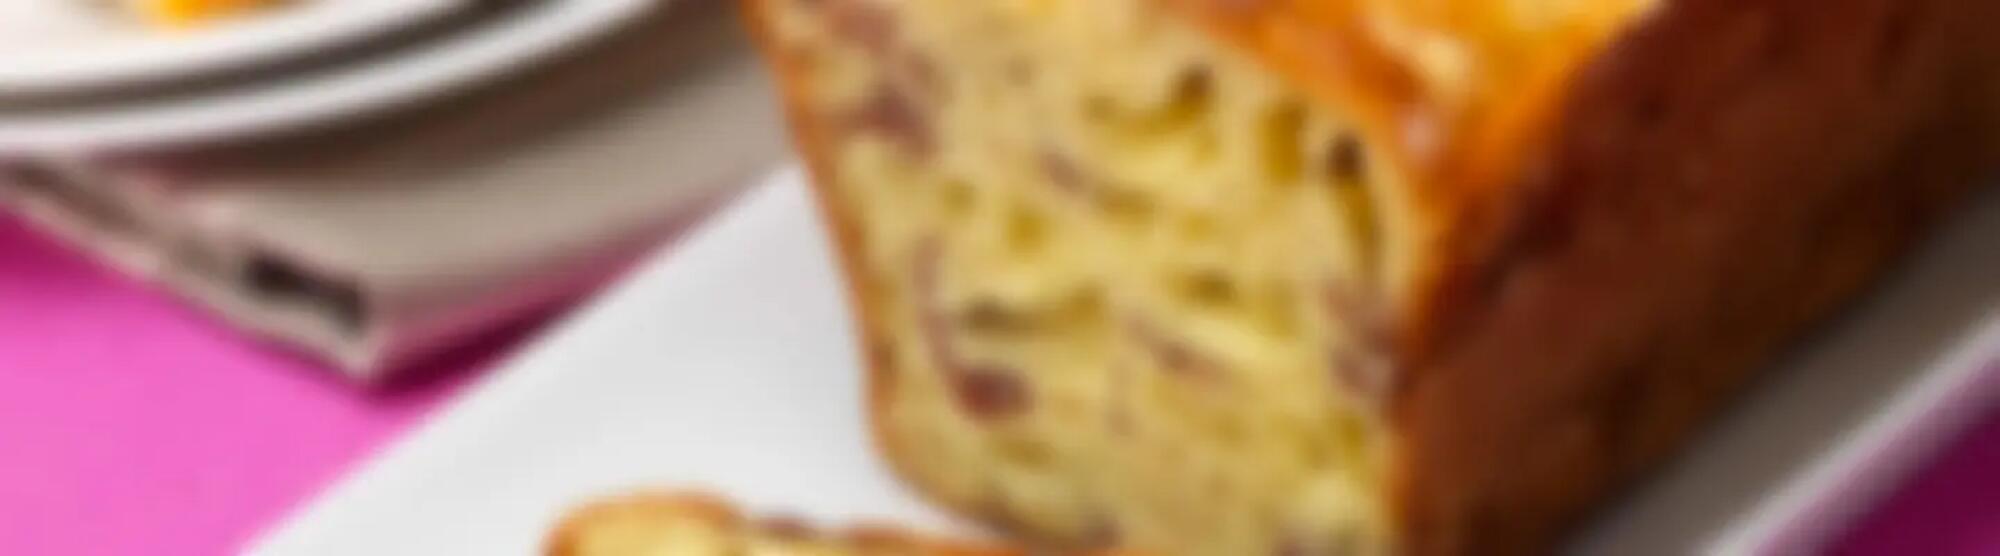 Recette : Cake savoyard au fromage à raclette